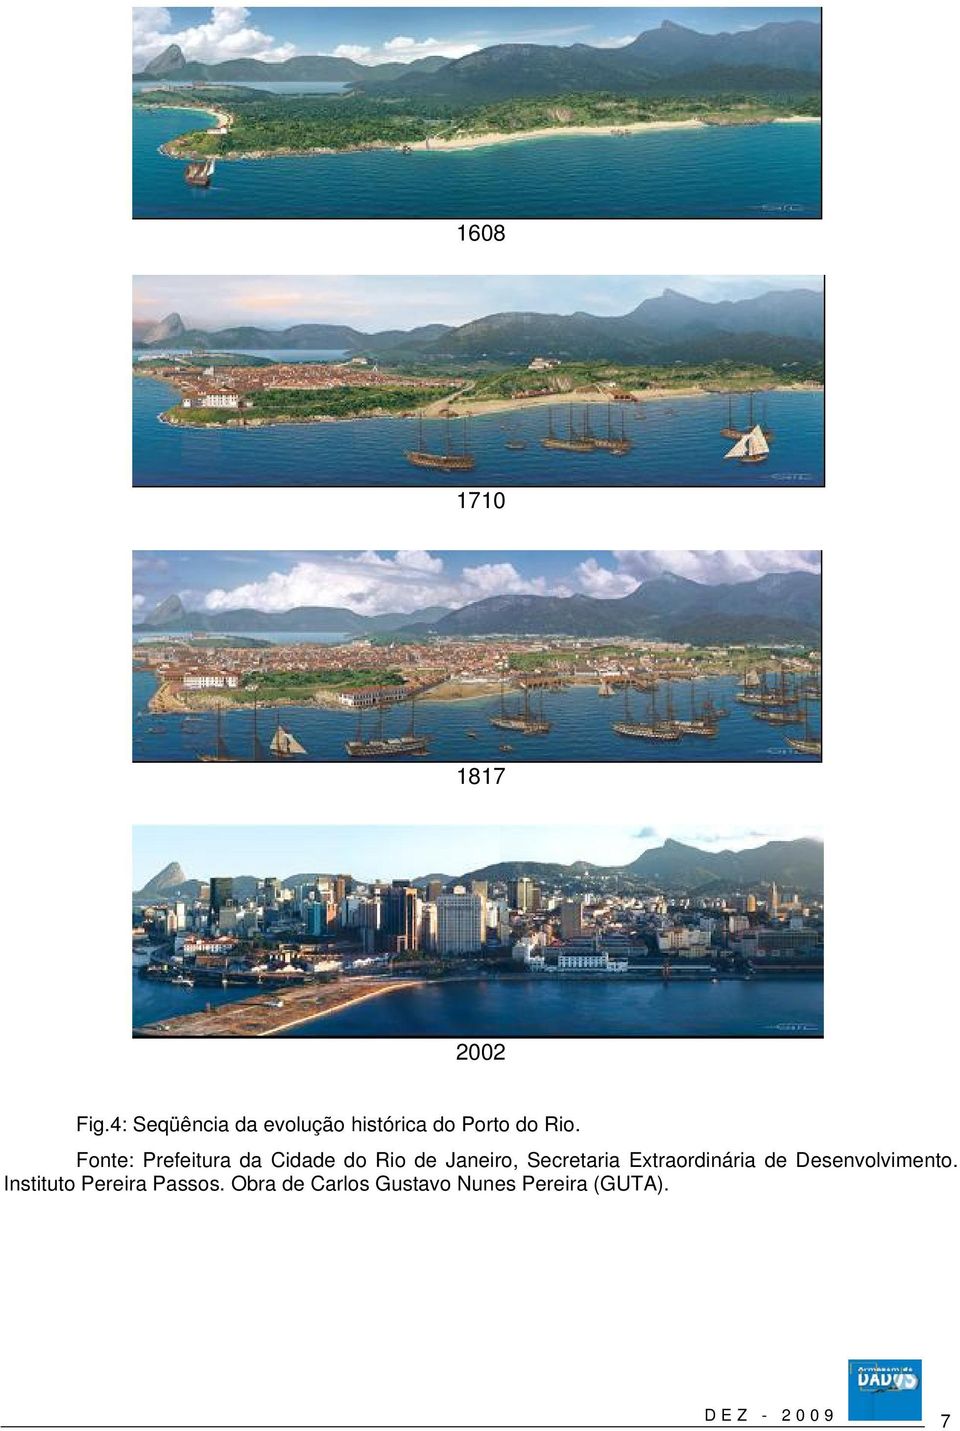 Fonte: Prefeitura da Cidade do Rio de Janeiro, Secretaria